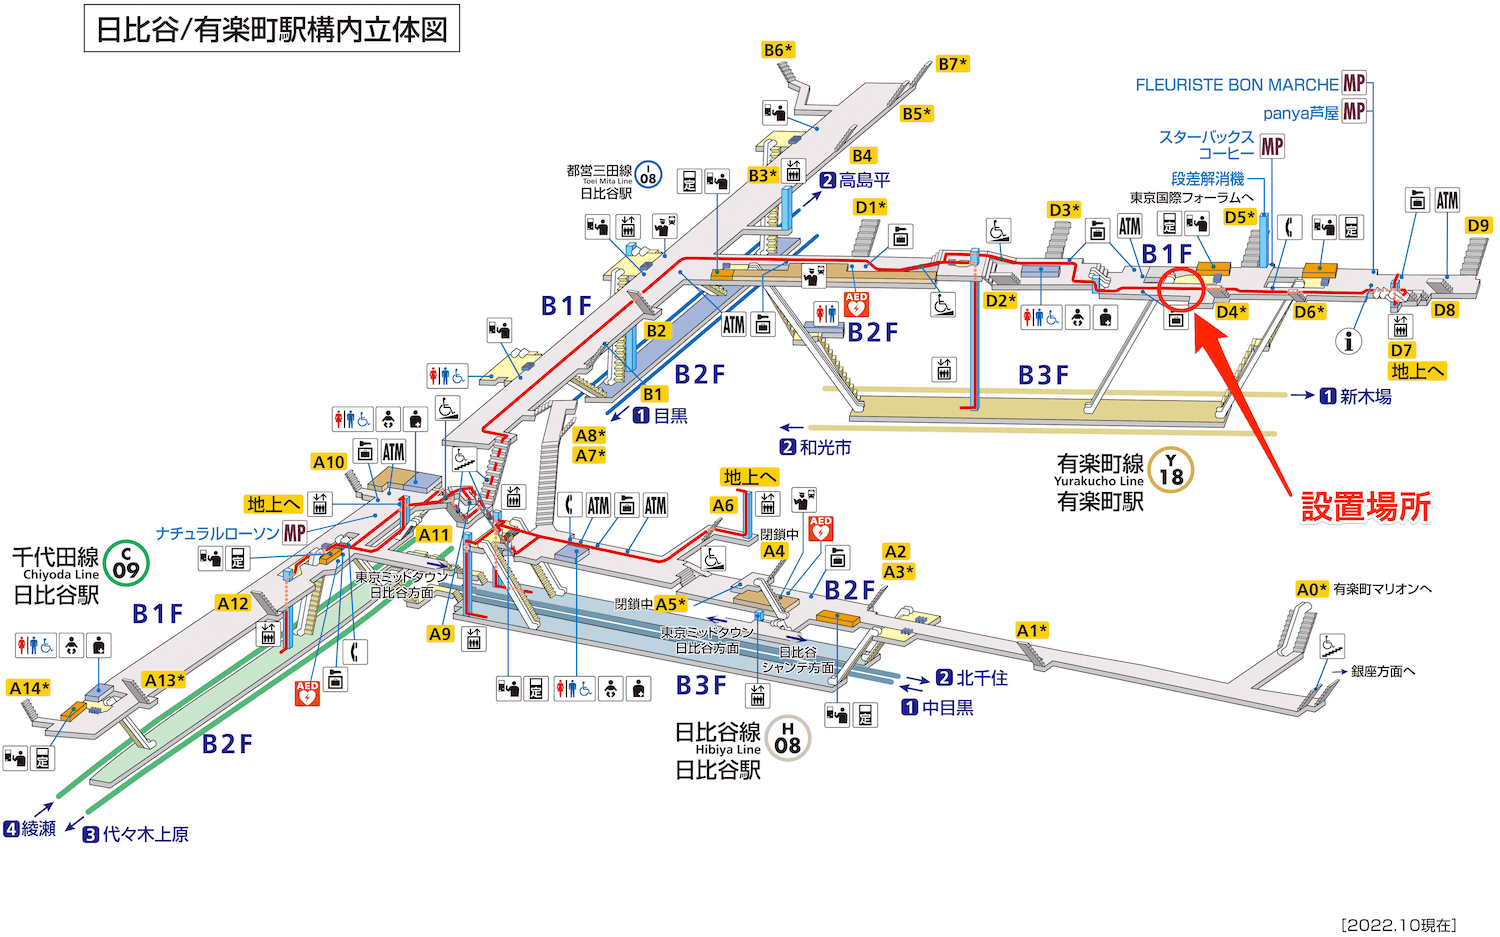 東京メトロ有楽町駅の構内図マップ